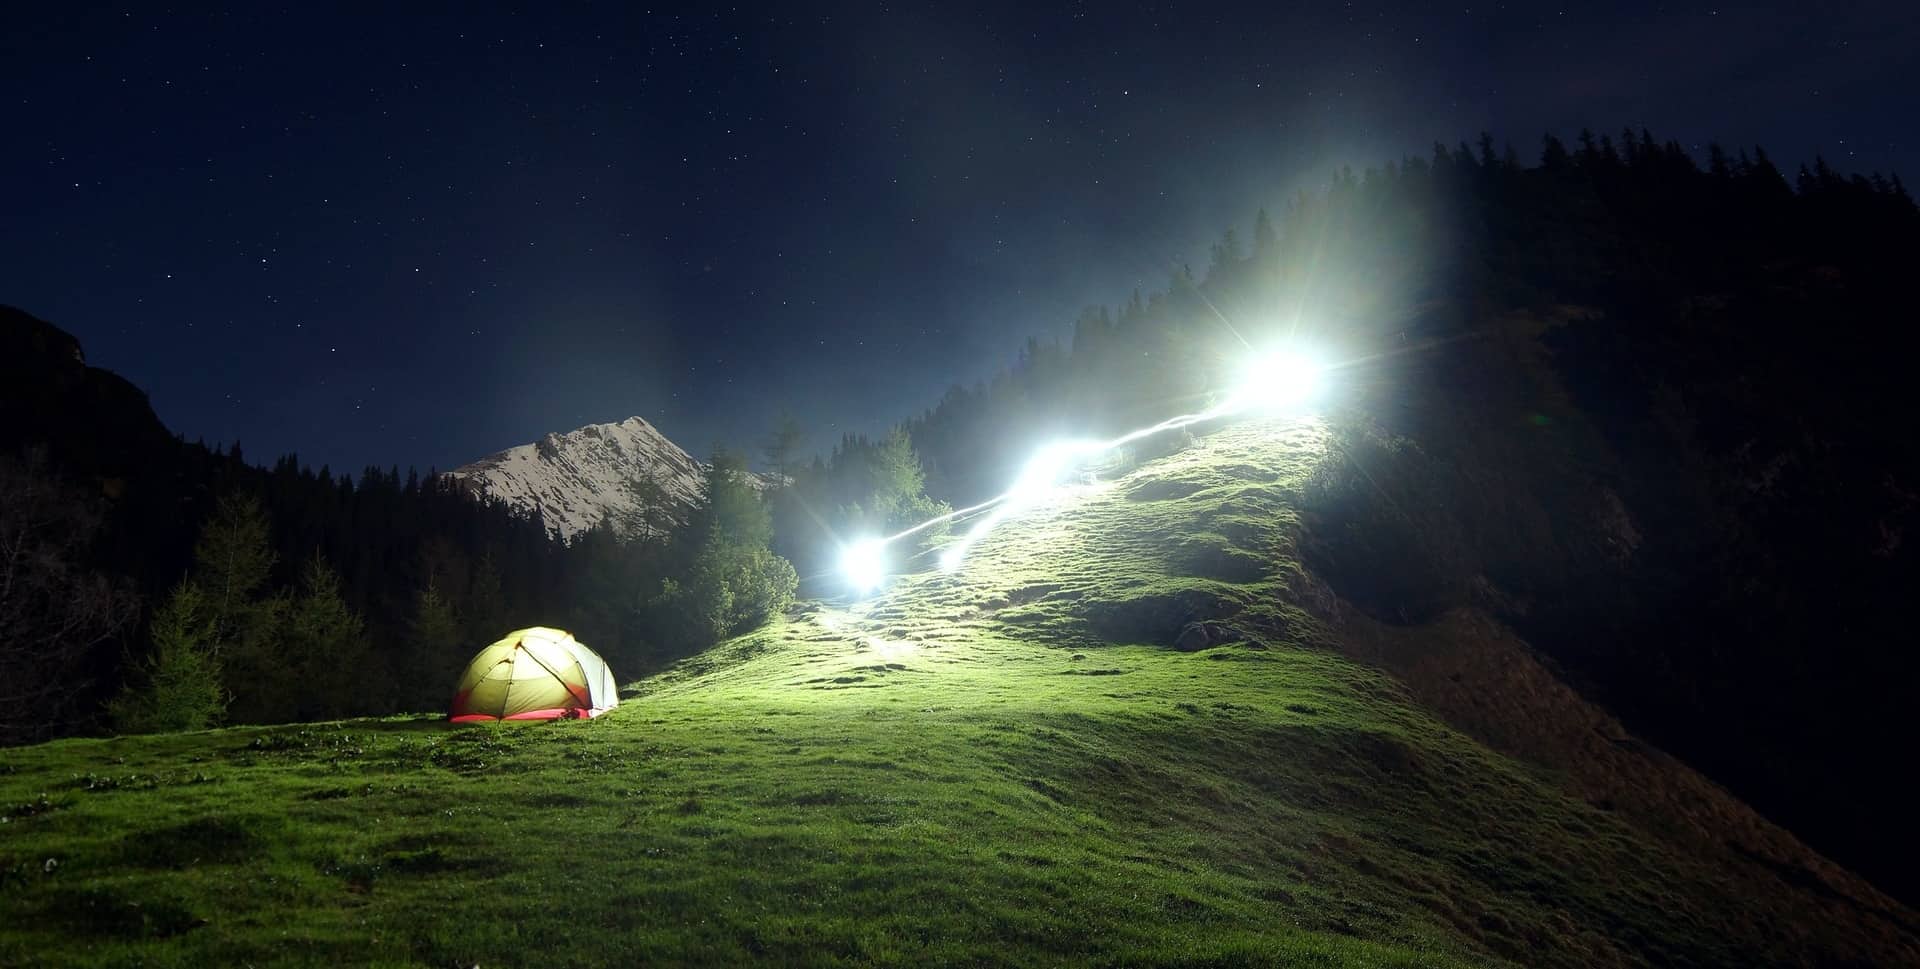 Camping Tent Setup At Night